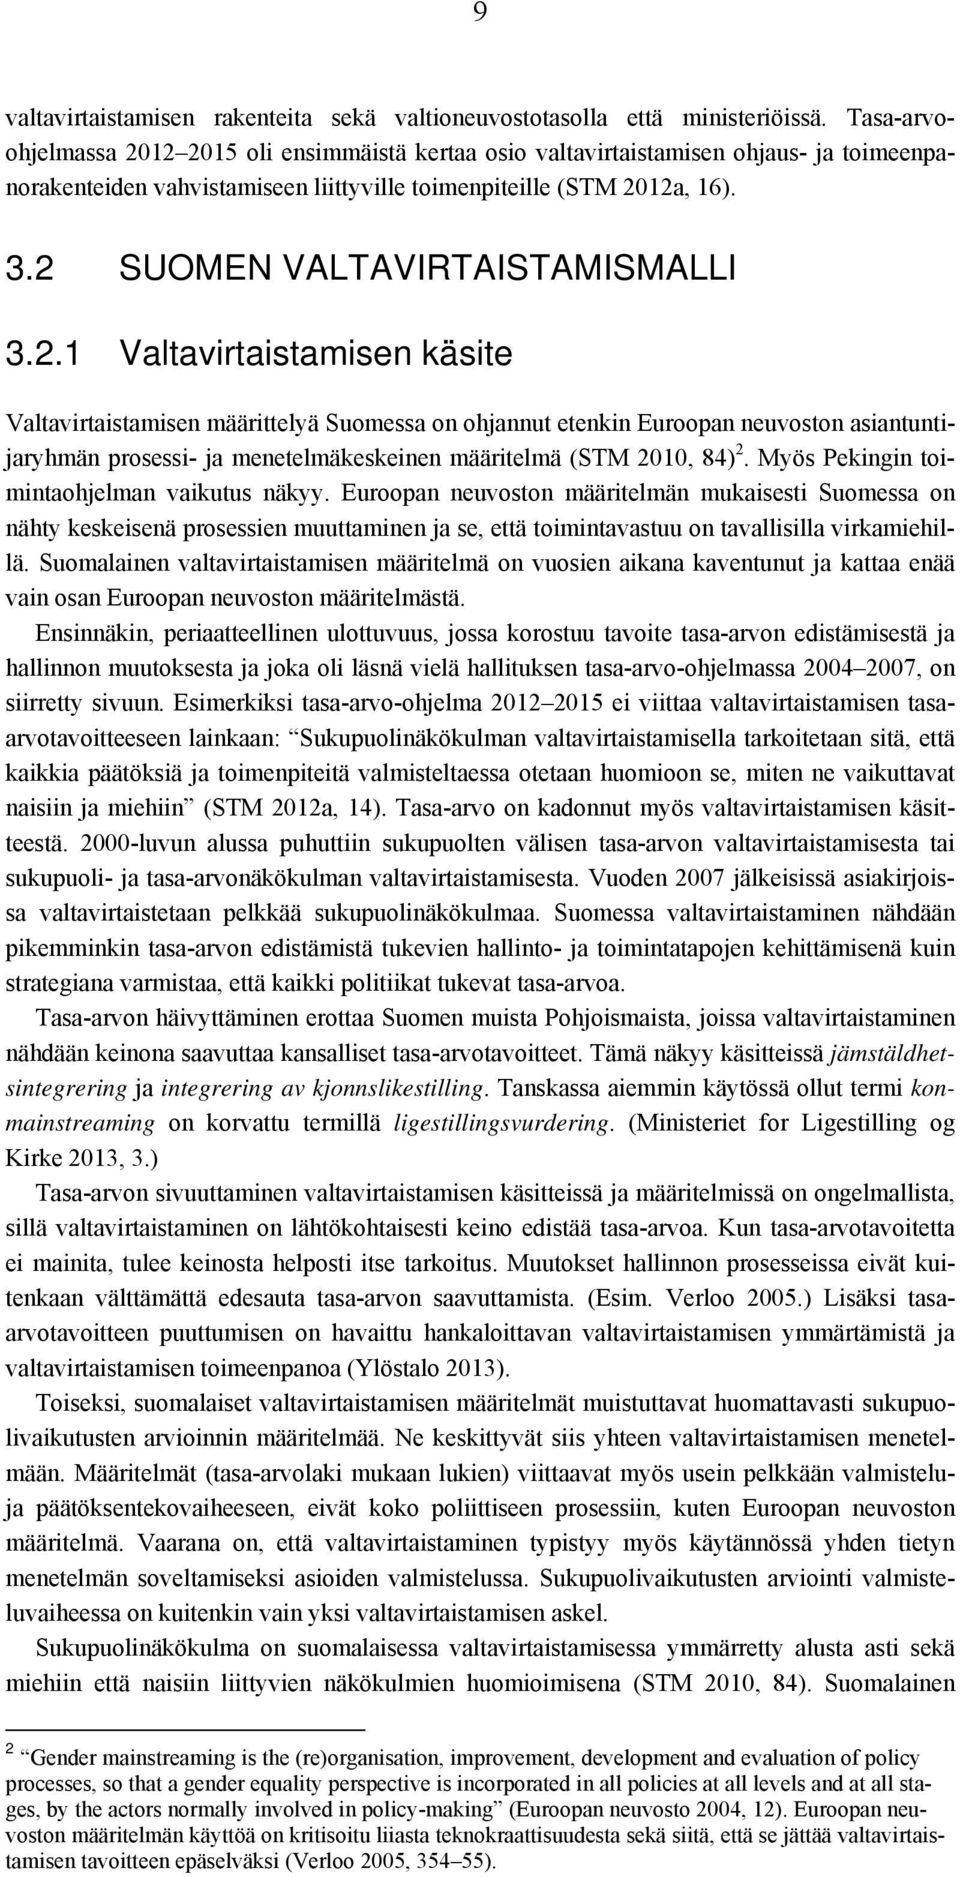 2 SUOMEN VALTAVIRTAISTAMISMALLI 3.2.1 Valtavirtaistamisen käsite Valtavirtaistamisen määrittelyä Suomessa on ohjannut etenkin Euroopan neuvoston asiantuntijaryhmän prosessi- ja menetelmäkeskeinen määritelmä (STM 2010, 84) 2.